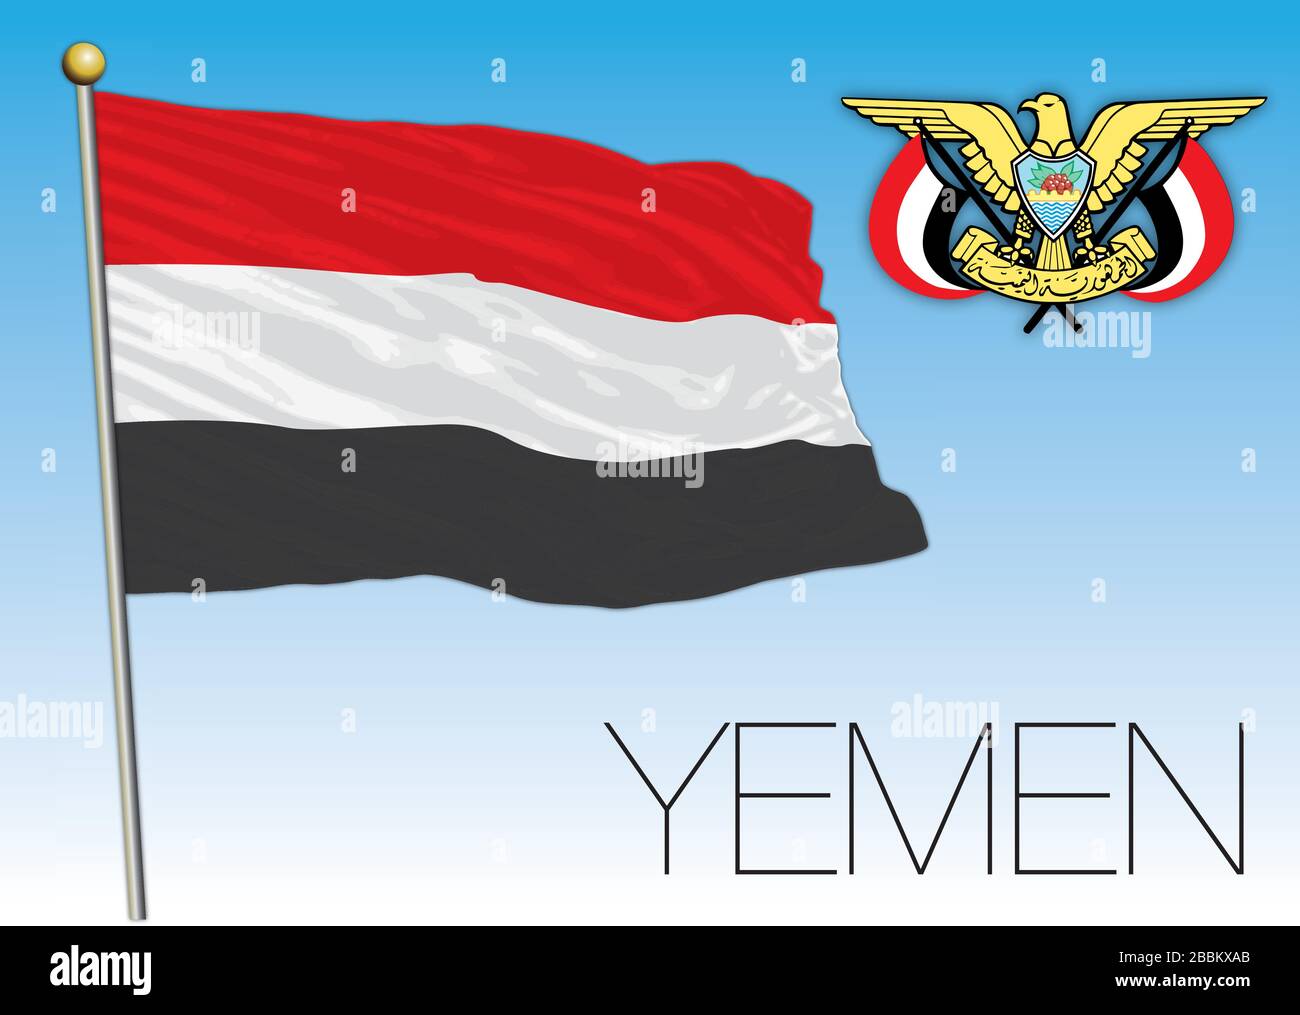 Yemen bandiera ufficiale nazionale e stemma, medio-orientale, illustrazione vettoriale Illustrazione Vettoriale